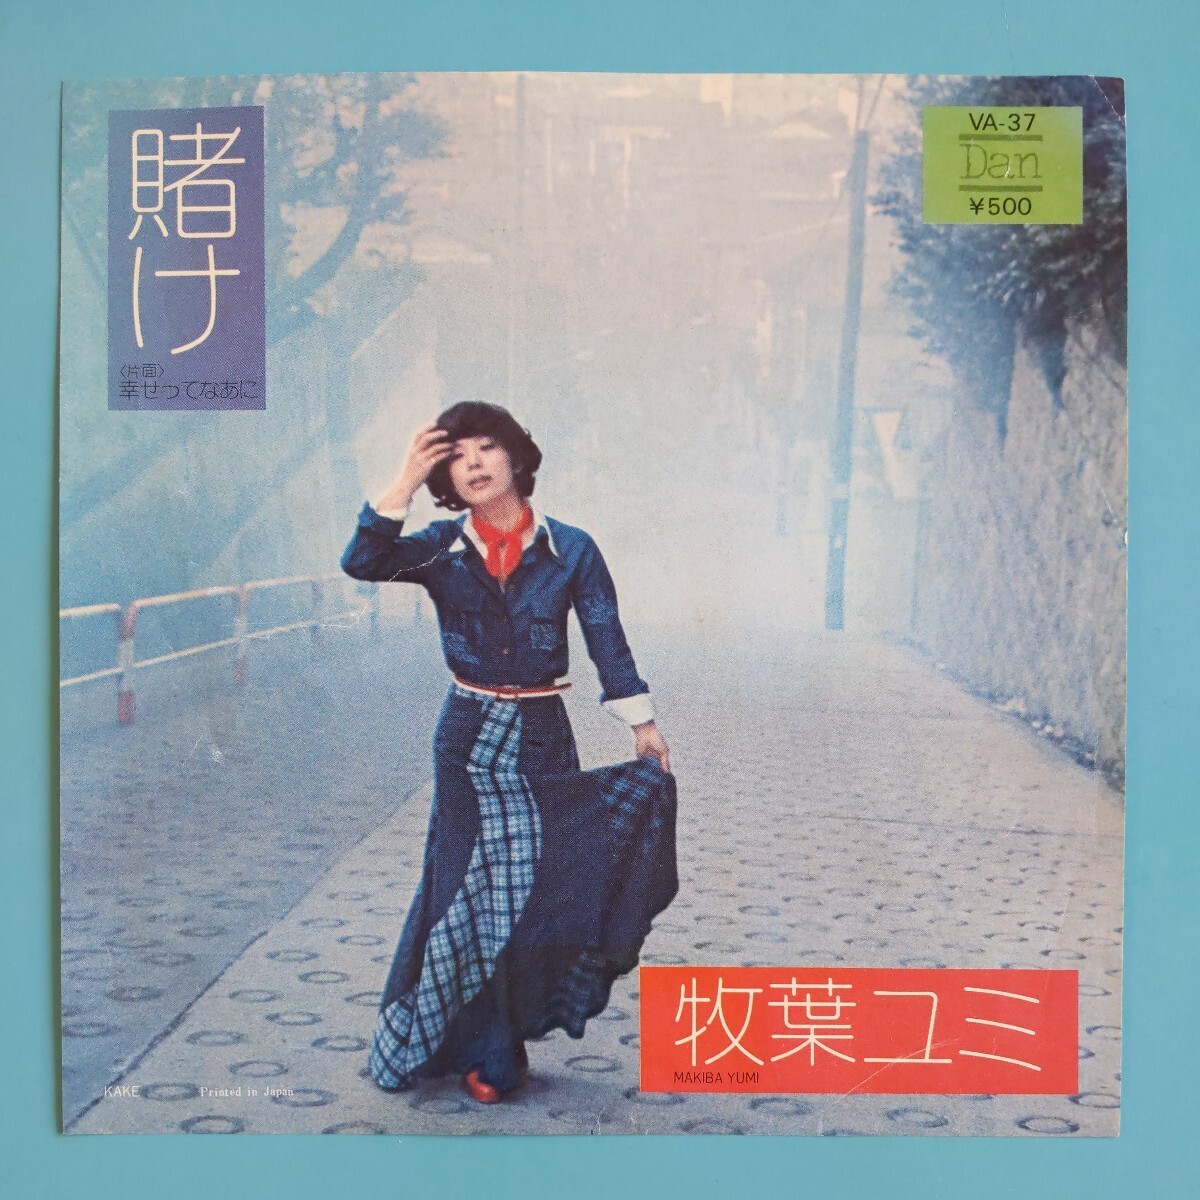 【試聴済EP】牧葉ユミ『賭け/幸せってなあに』昭和歌謡の画像1